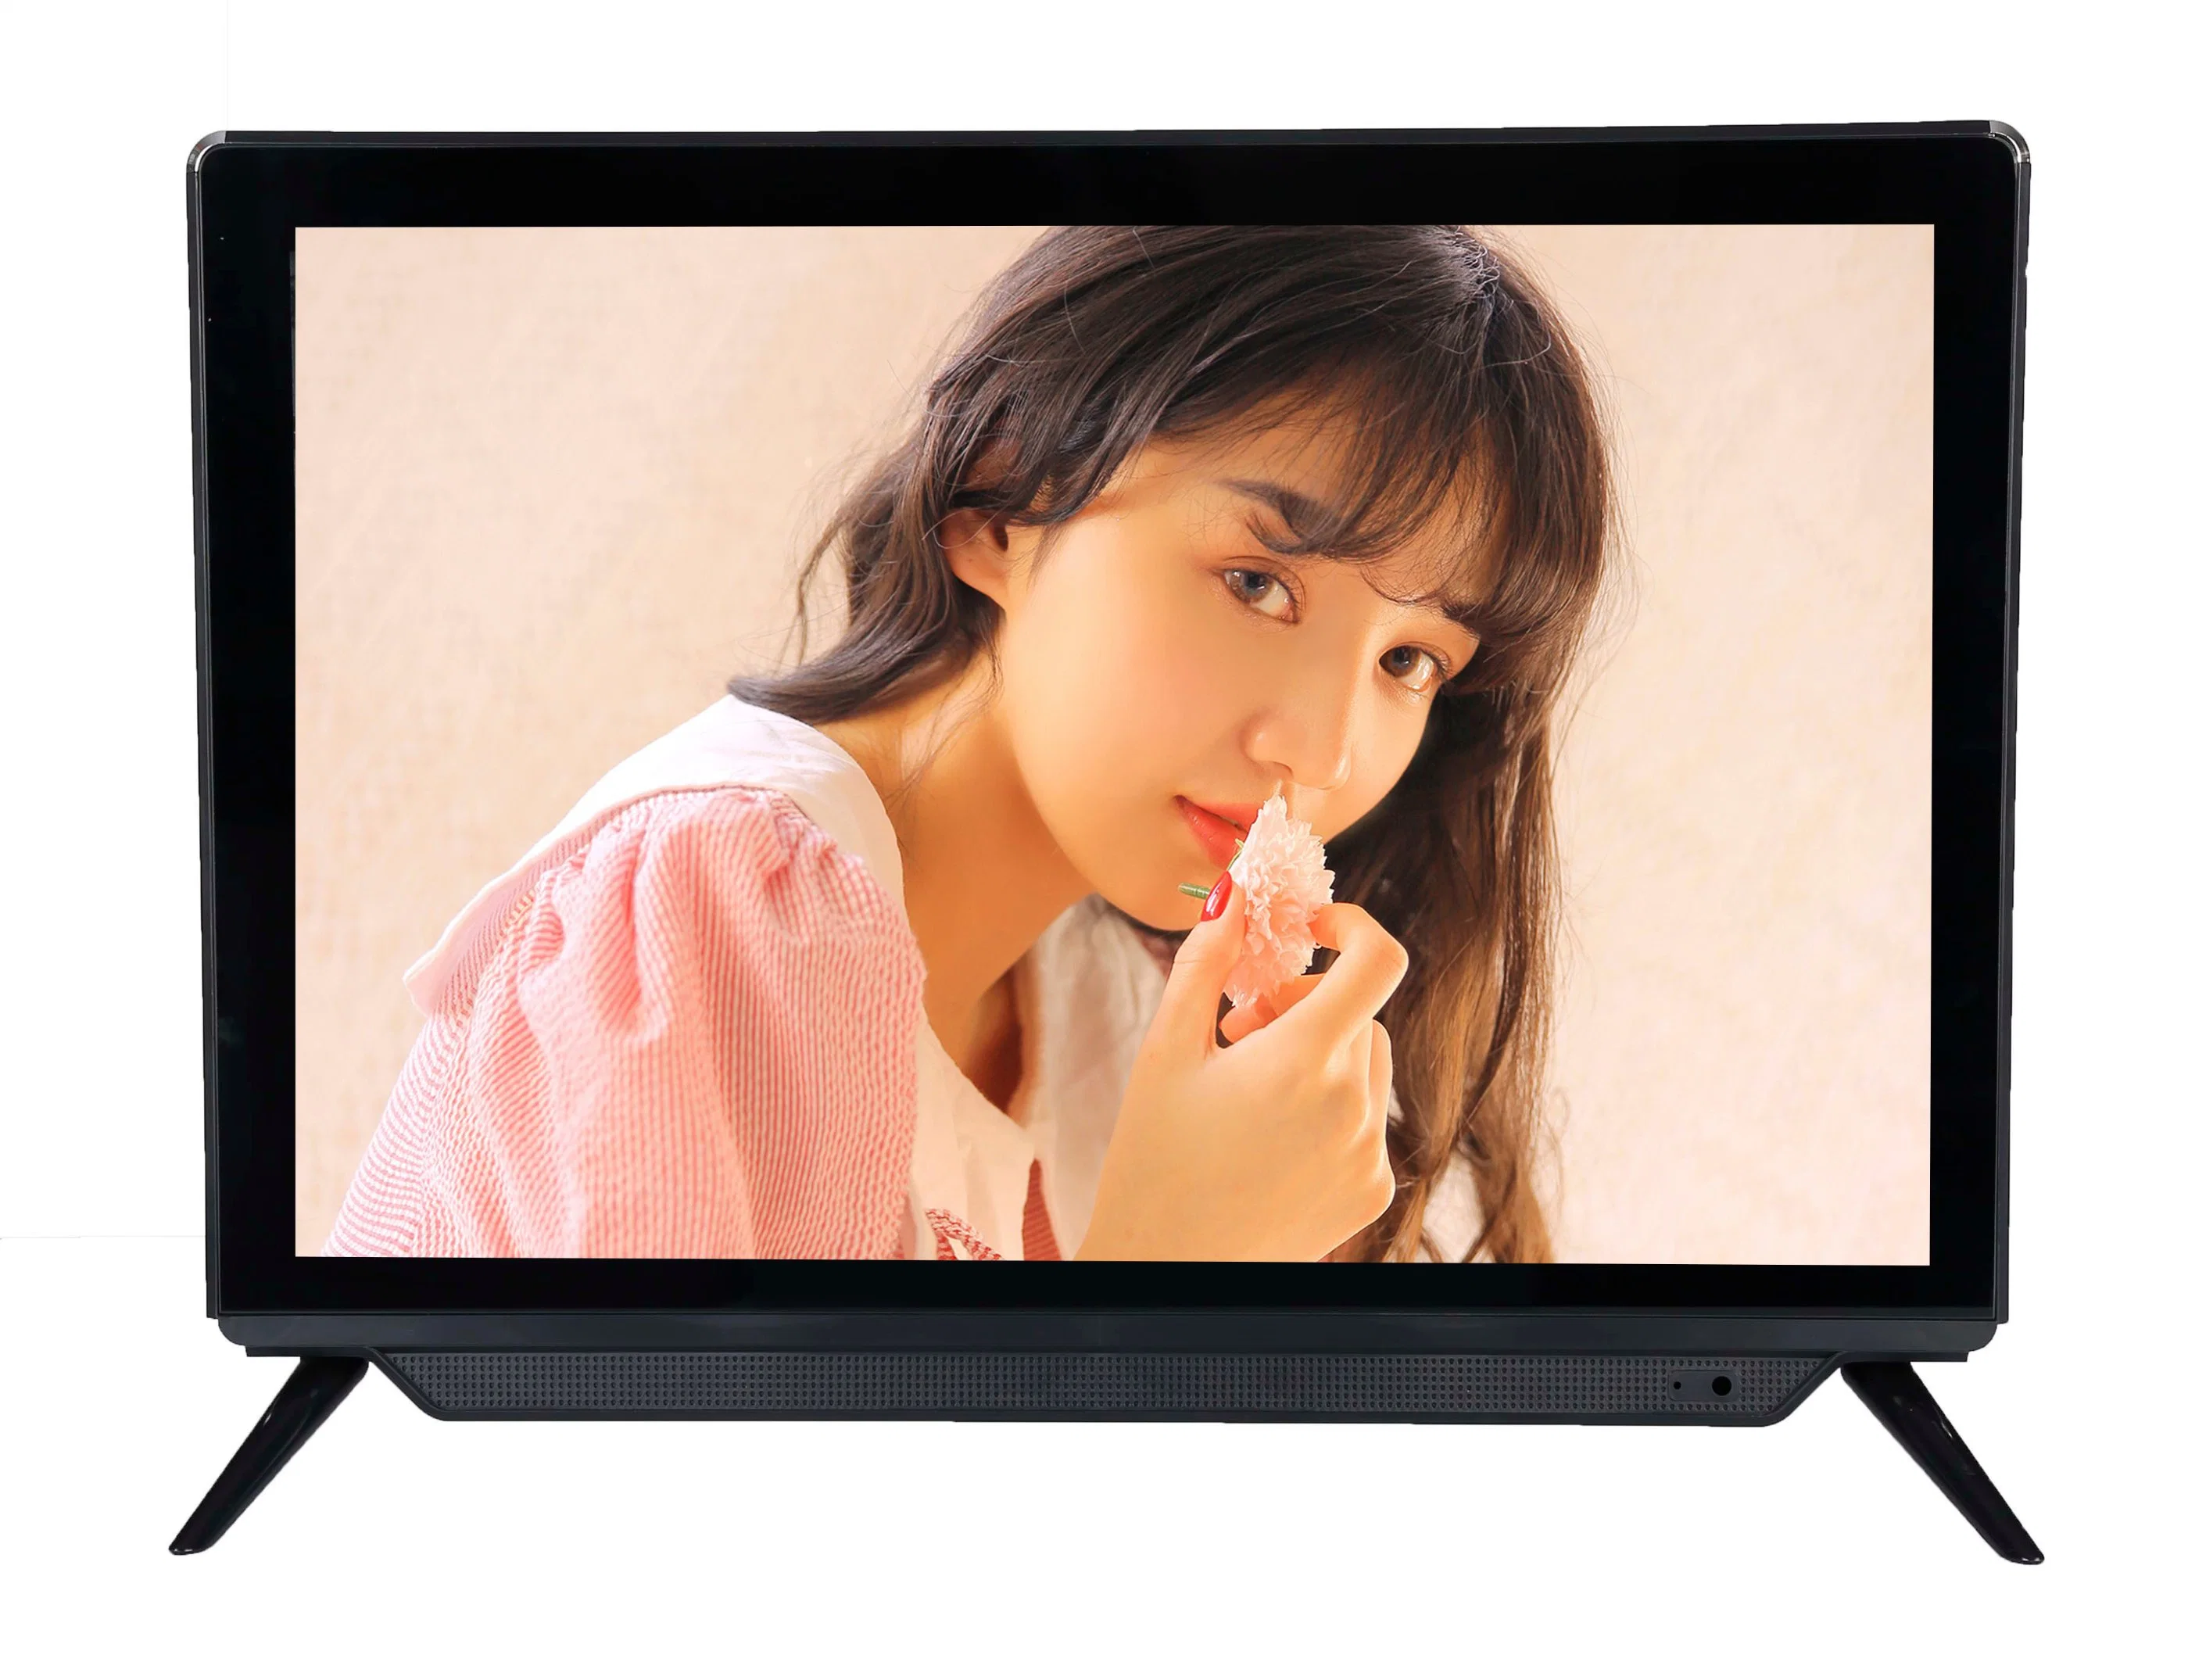 TV Digital Color 17 19 inch TV portátil 12V DC Television